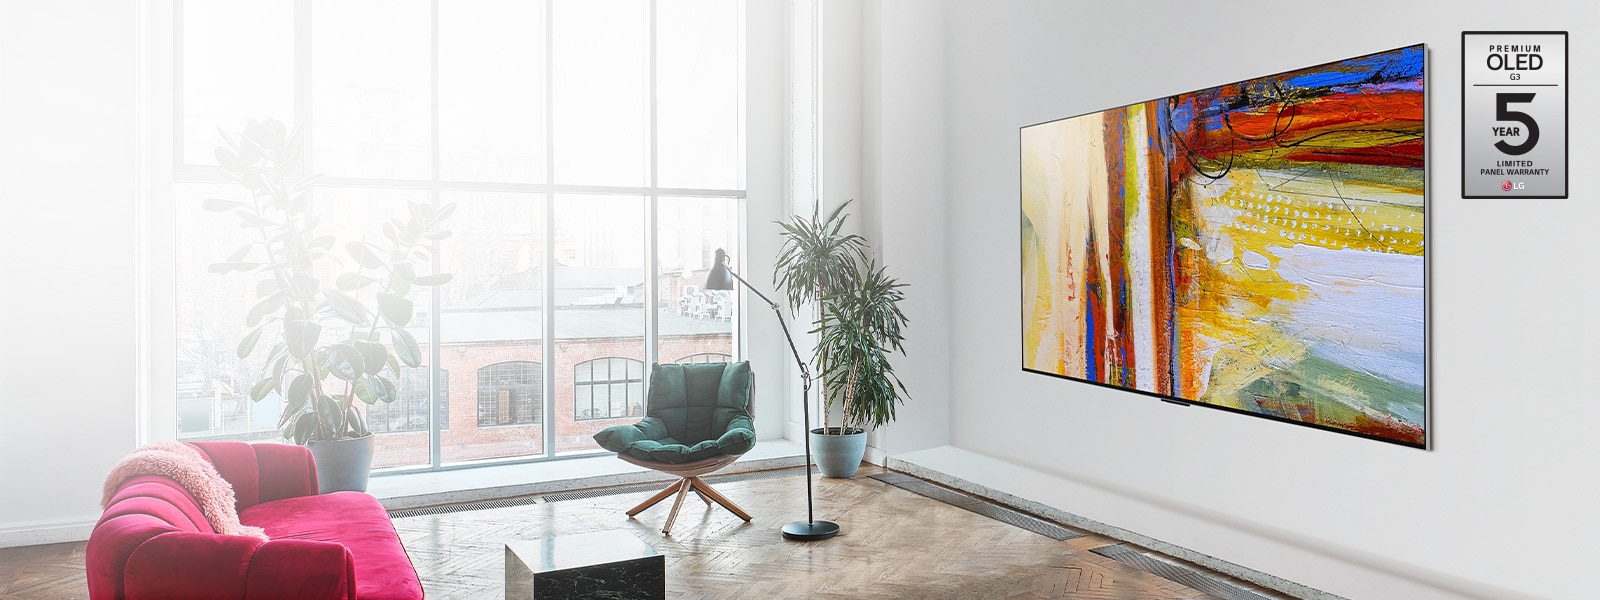 Pilt telerist LG OLED G3, mis näitab heledas ja erksas ruumis värvilist abstraktset kunstiteost.